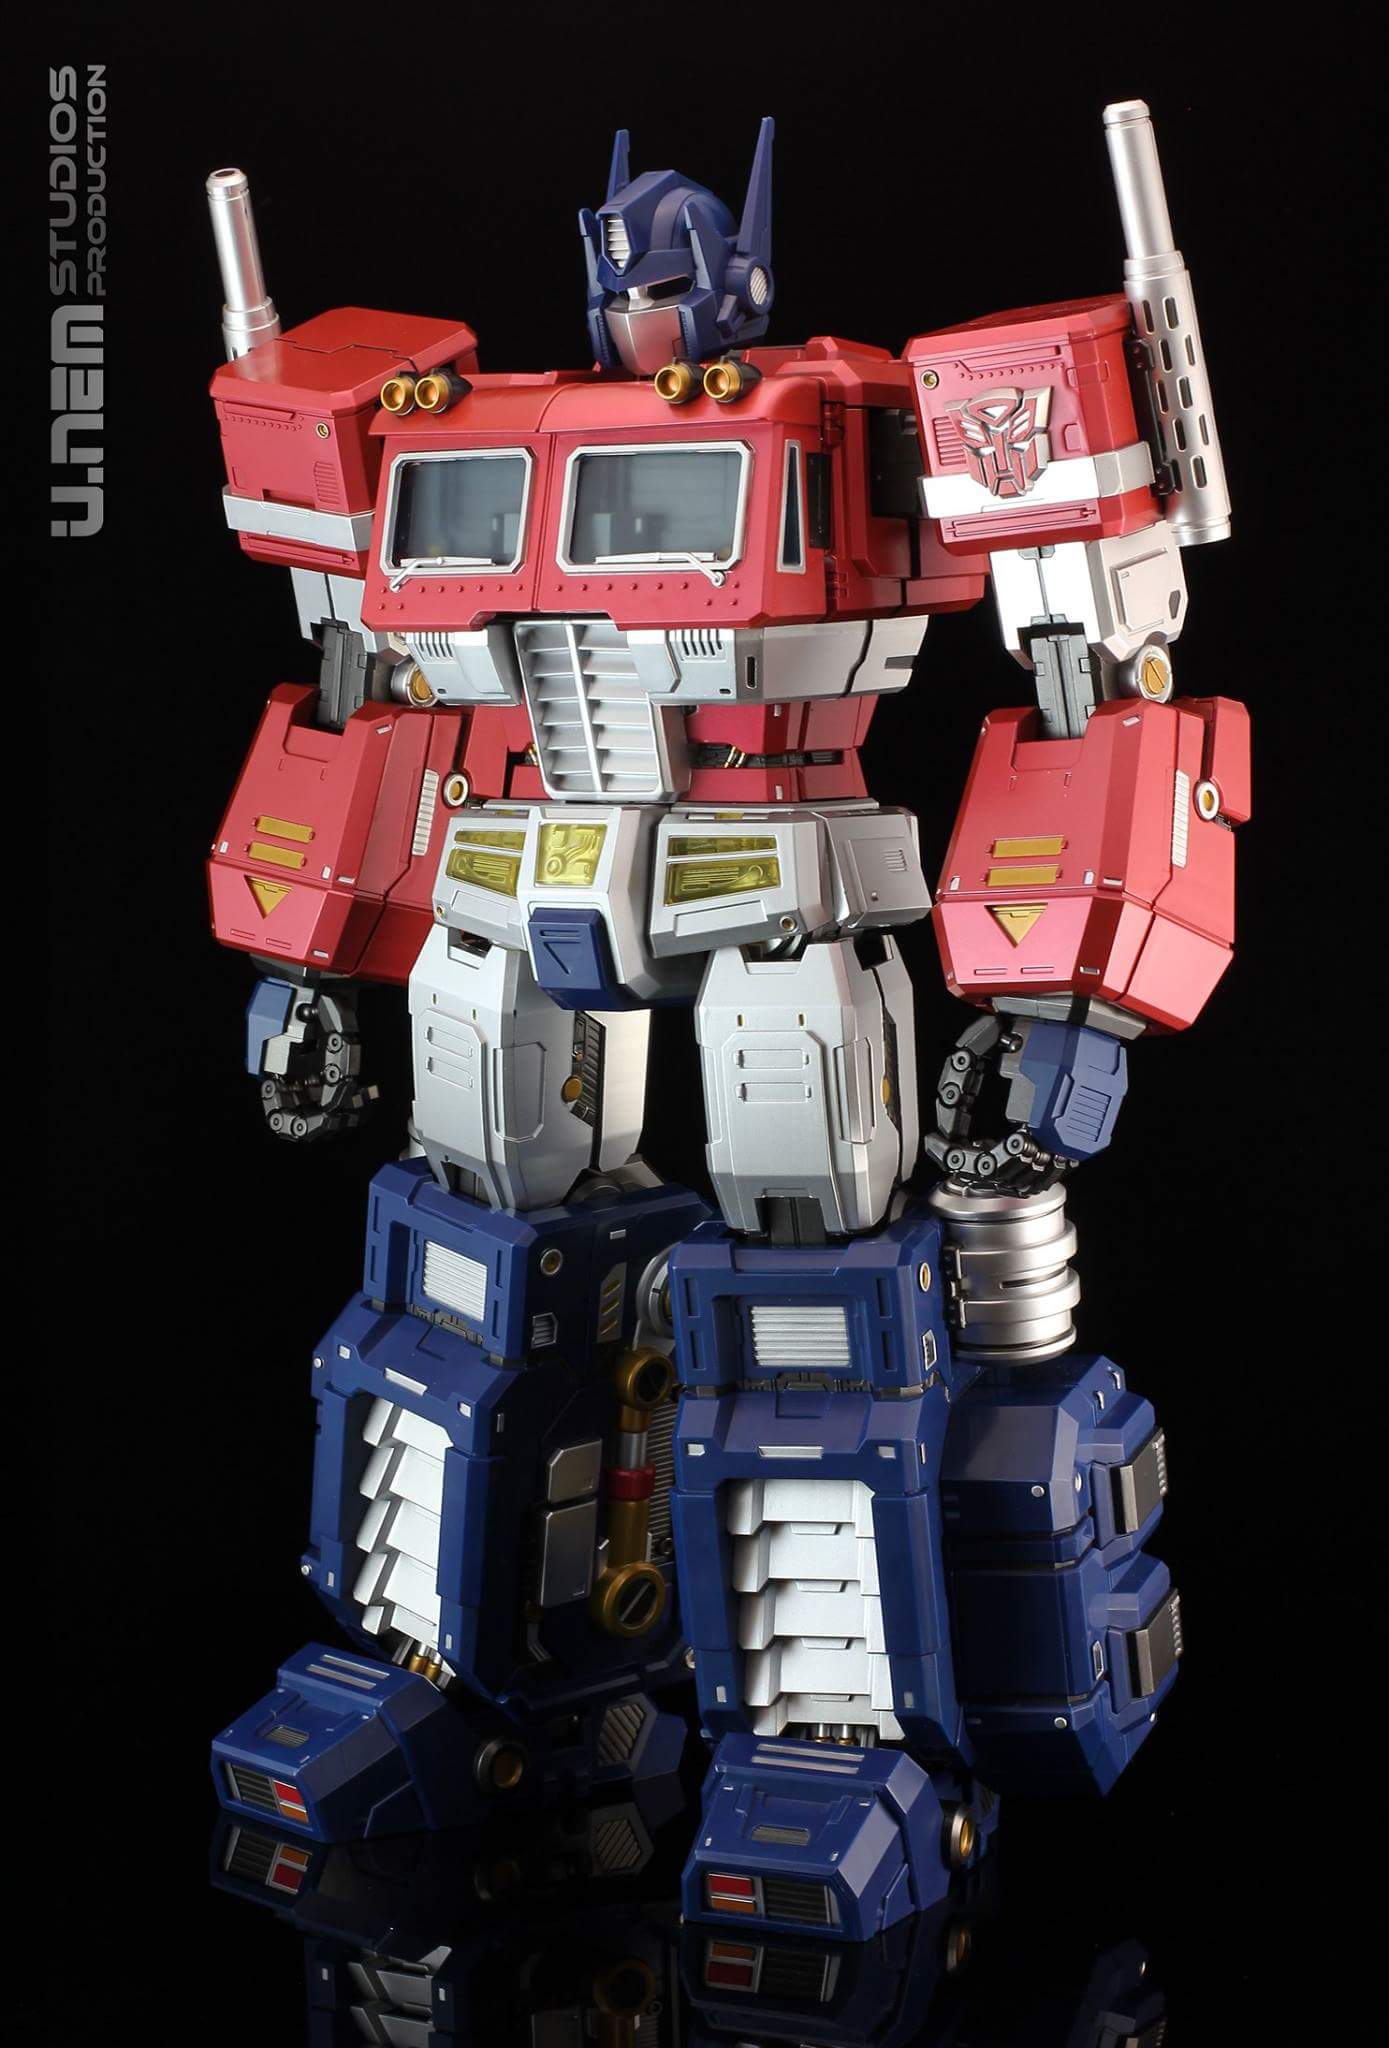 Figurines Transformers G1 (articulé, non transformable) ― Par ThreeZero, R.E.D, Super7, Toys Alliance, etc - Page 4 DwWkTXIn